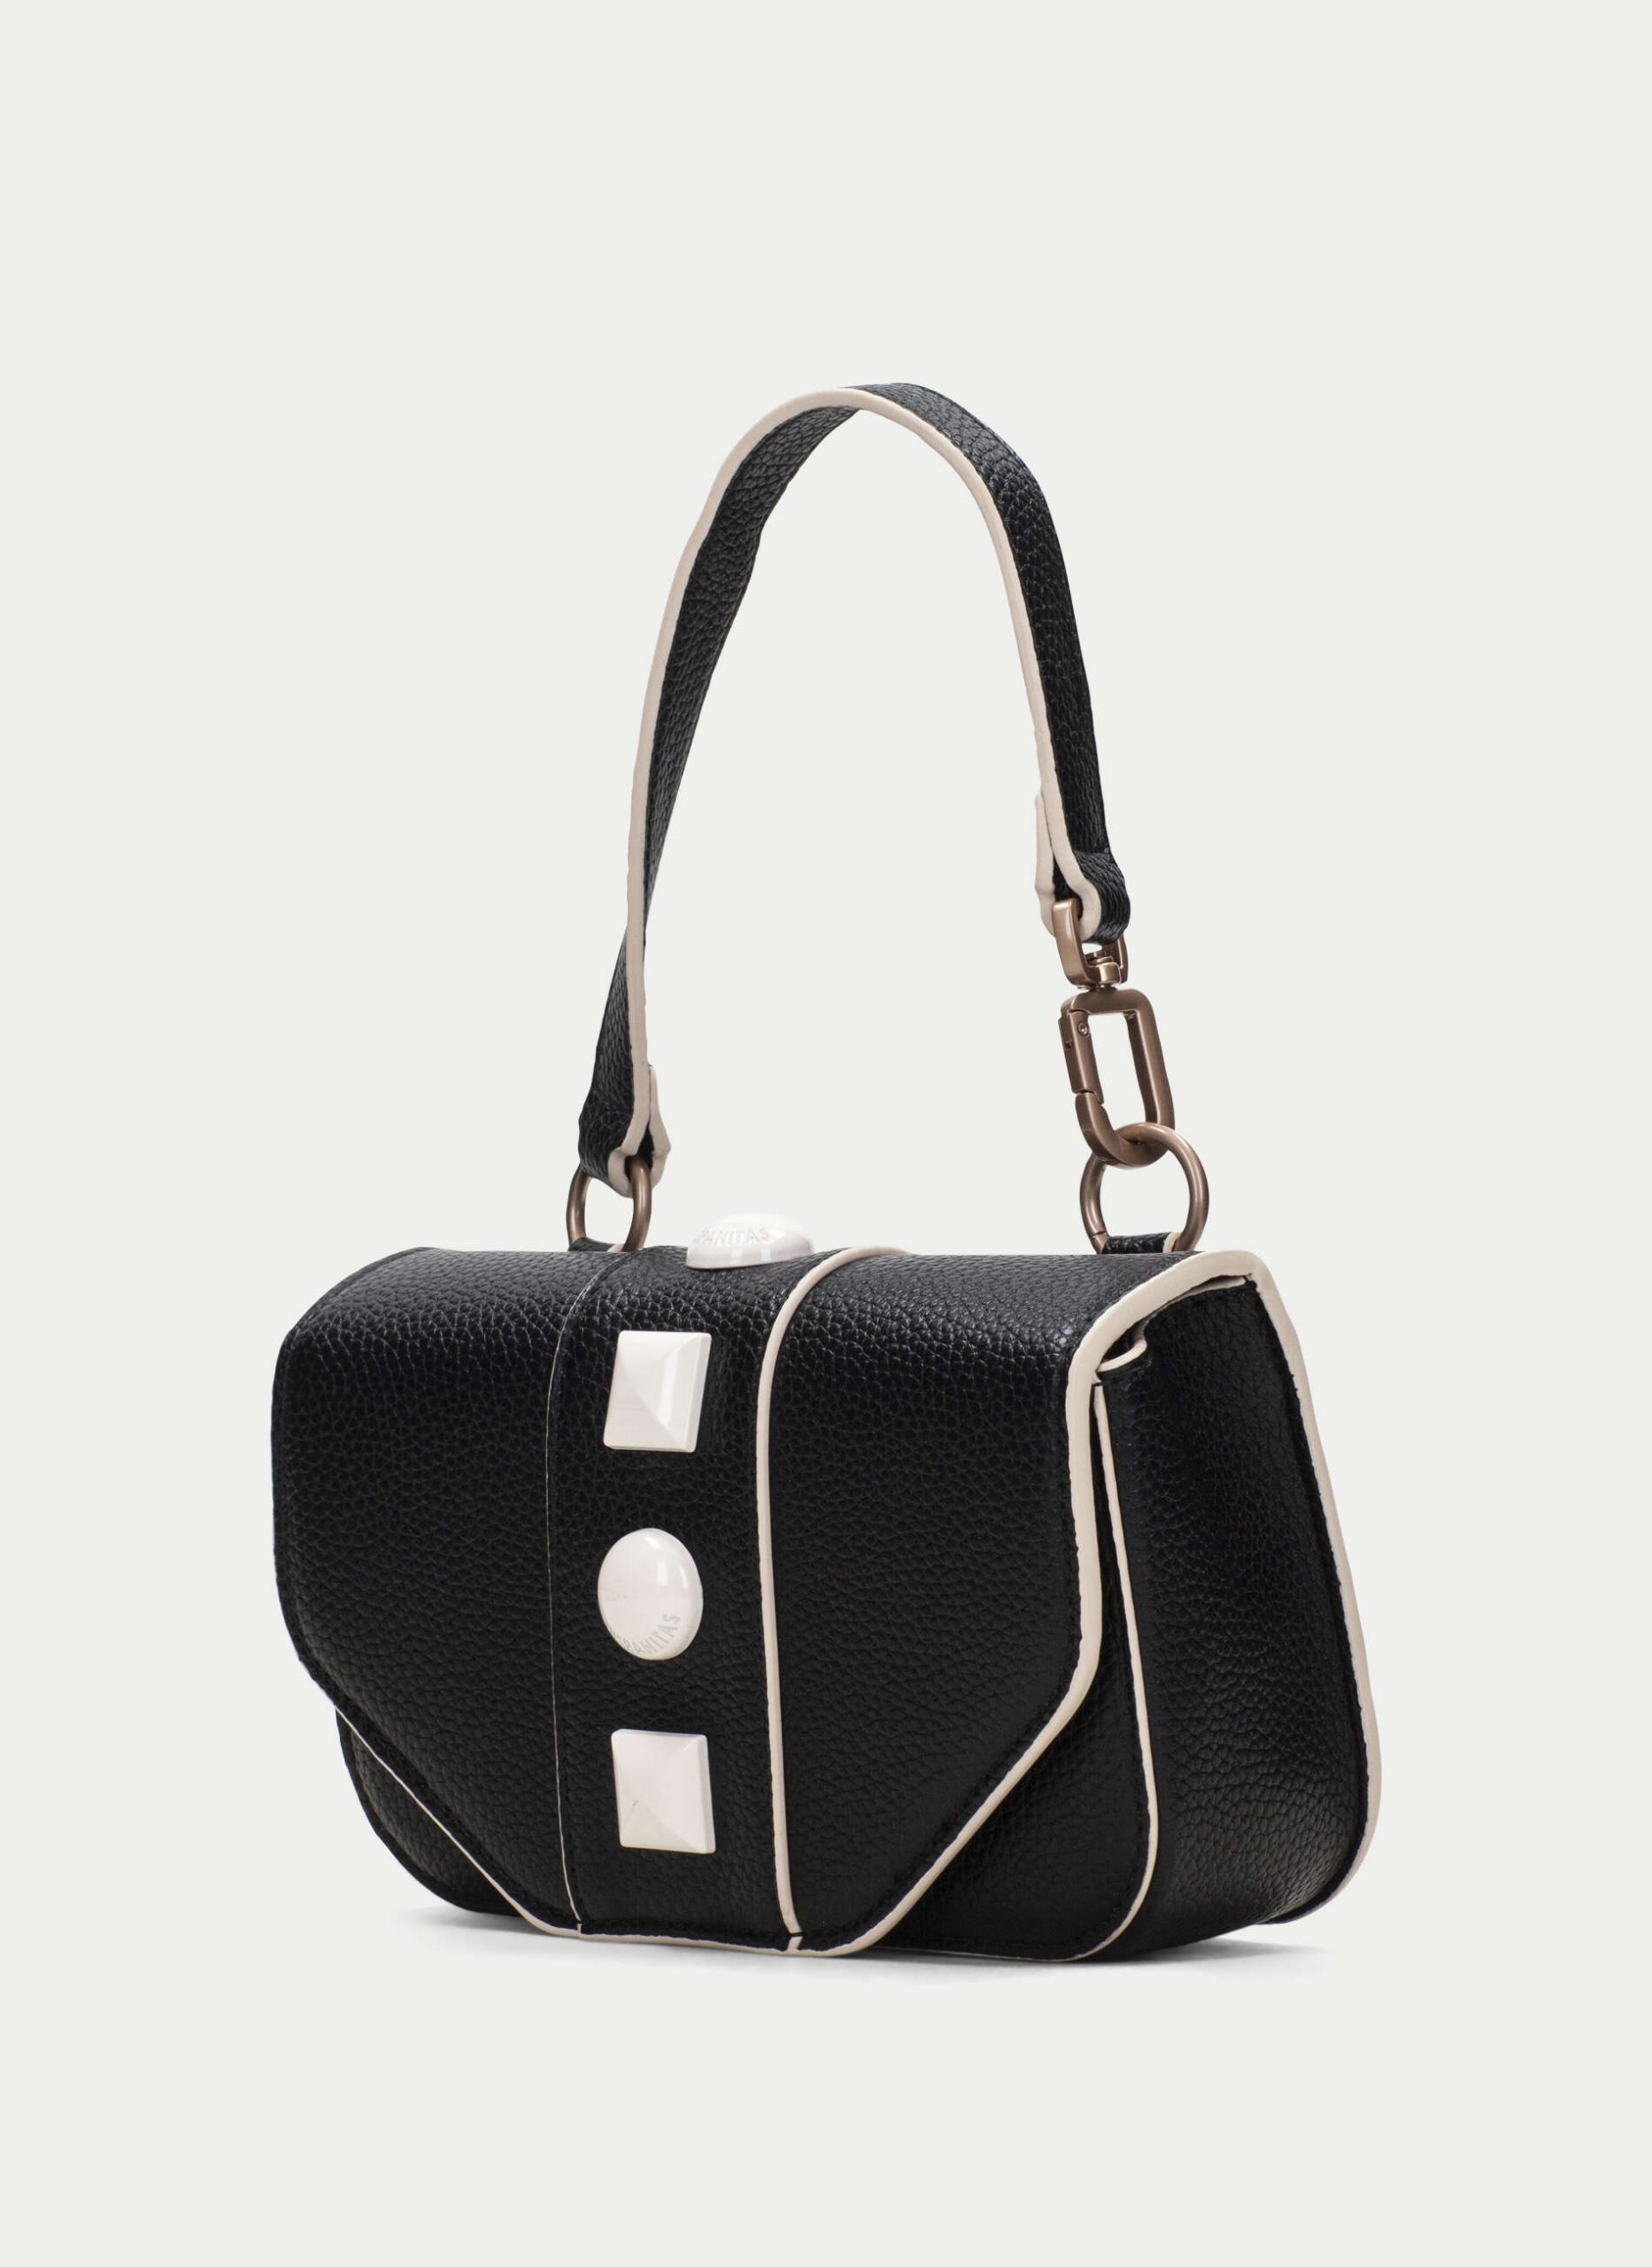 Hispanitas Top Handle Handbag in Black